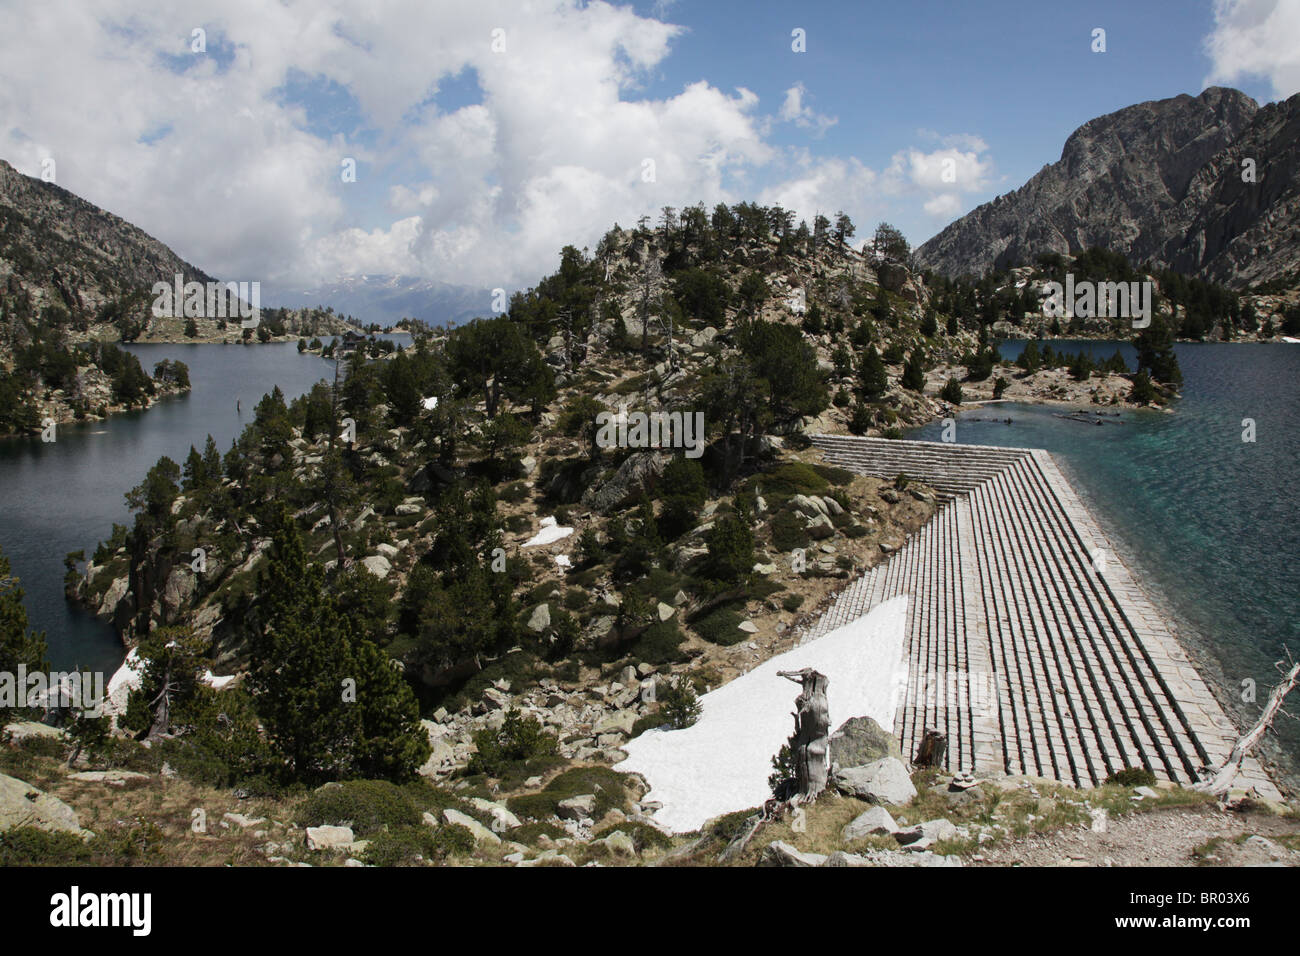 Le cirque classique alpine barrages de l'Estany Tort et Negra près de Refugi JM Blanc dans le Parc National de Sant Maurici Pyrénées Espagne Banque D'Images